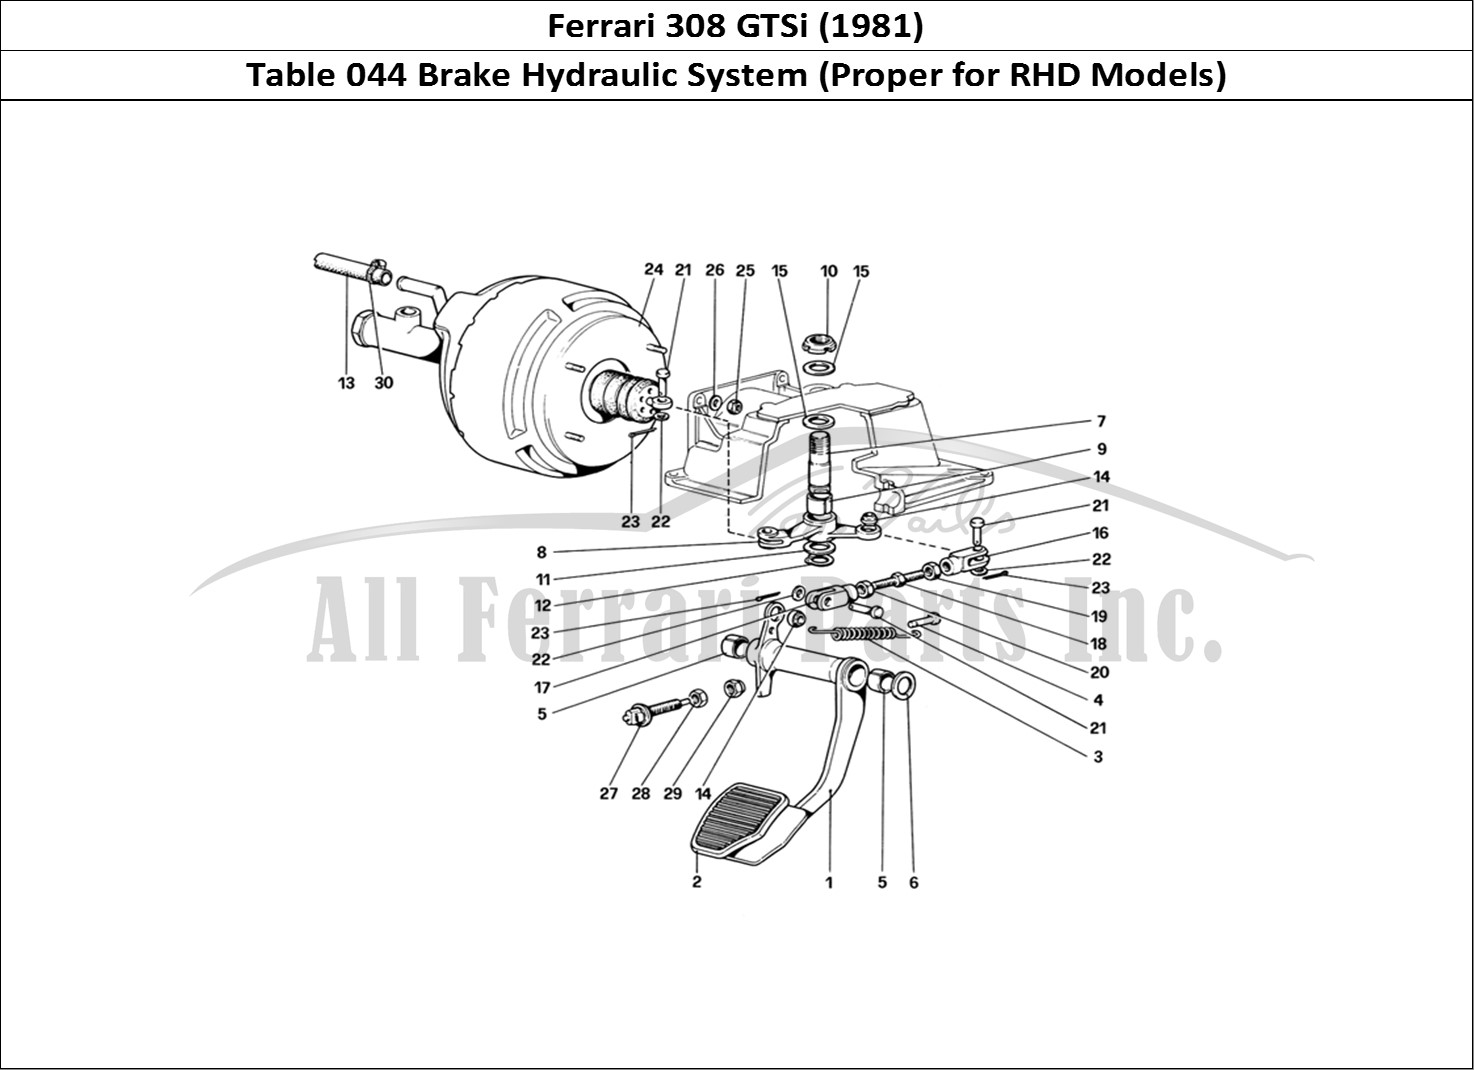 Ferrari Parts Ferrari 308 GTBi (1981) Page 044 Brake Hydraulic System (V